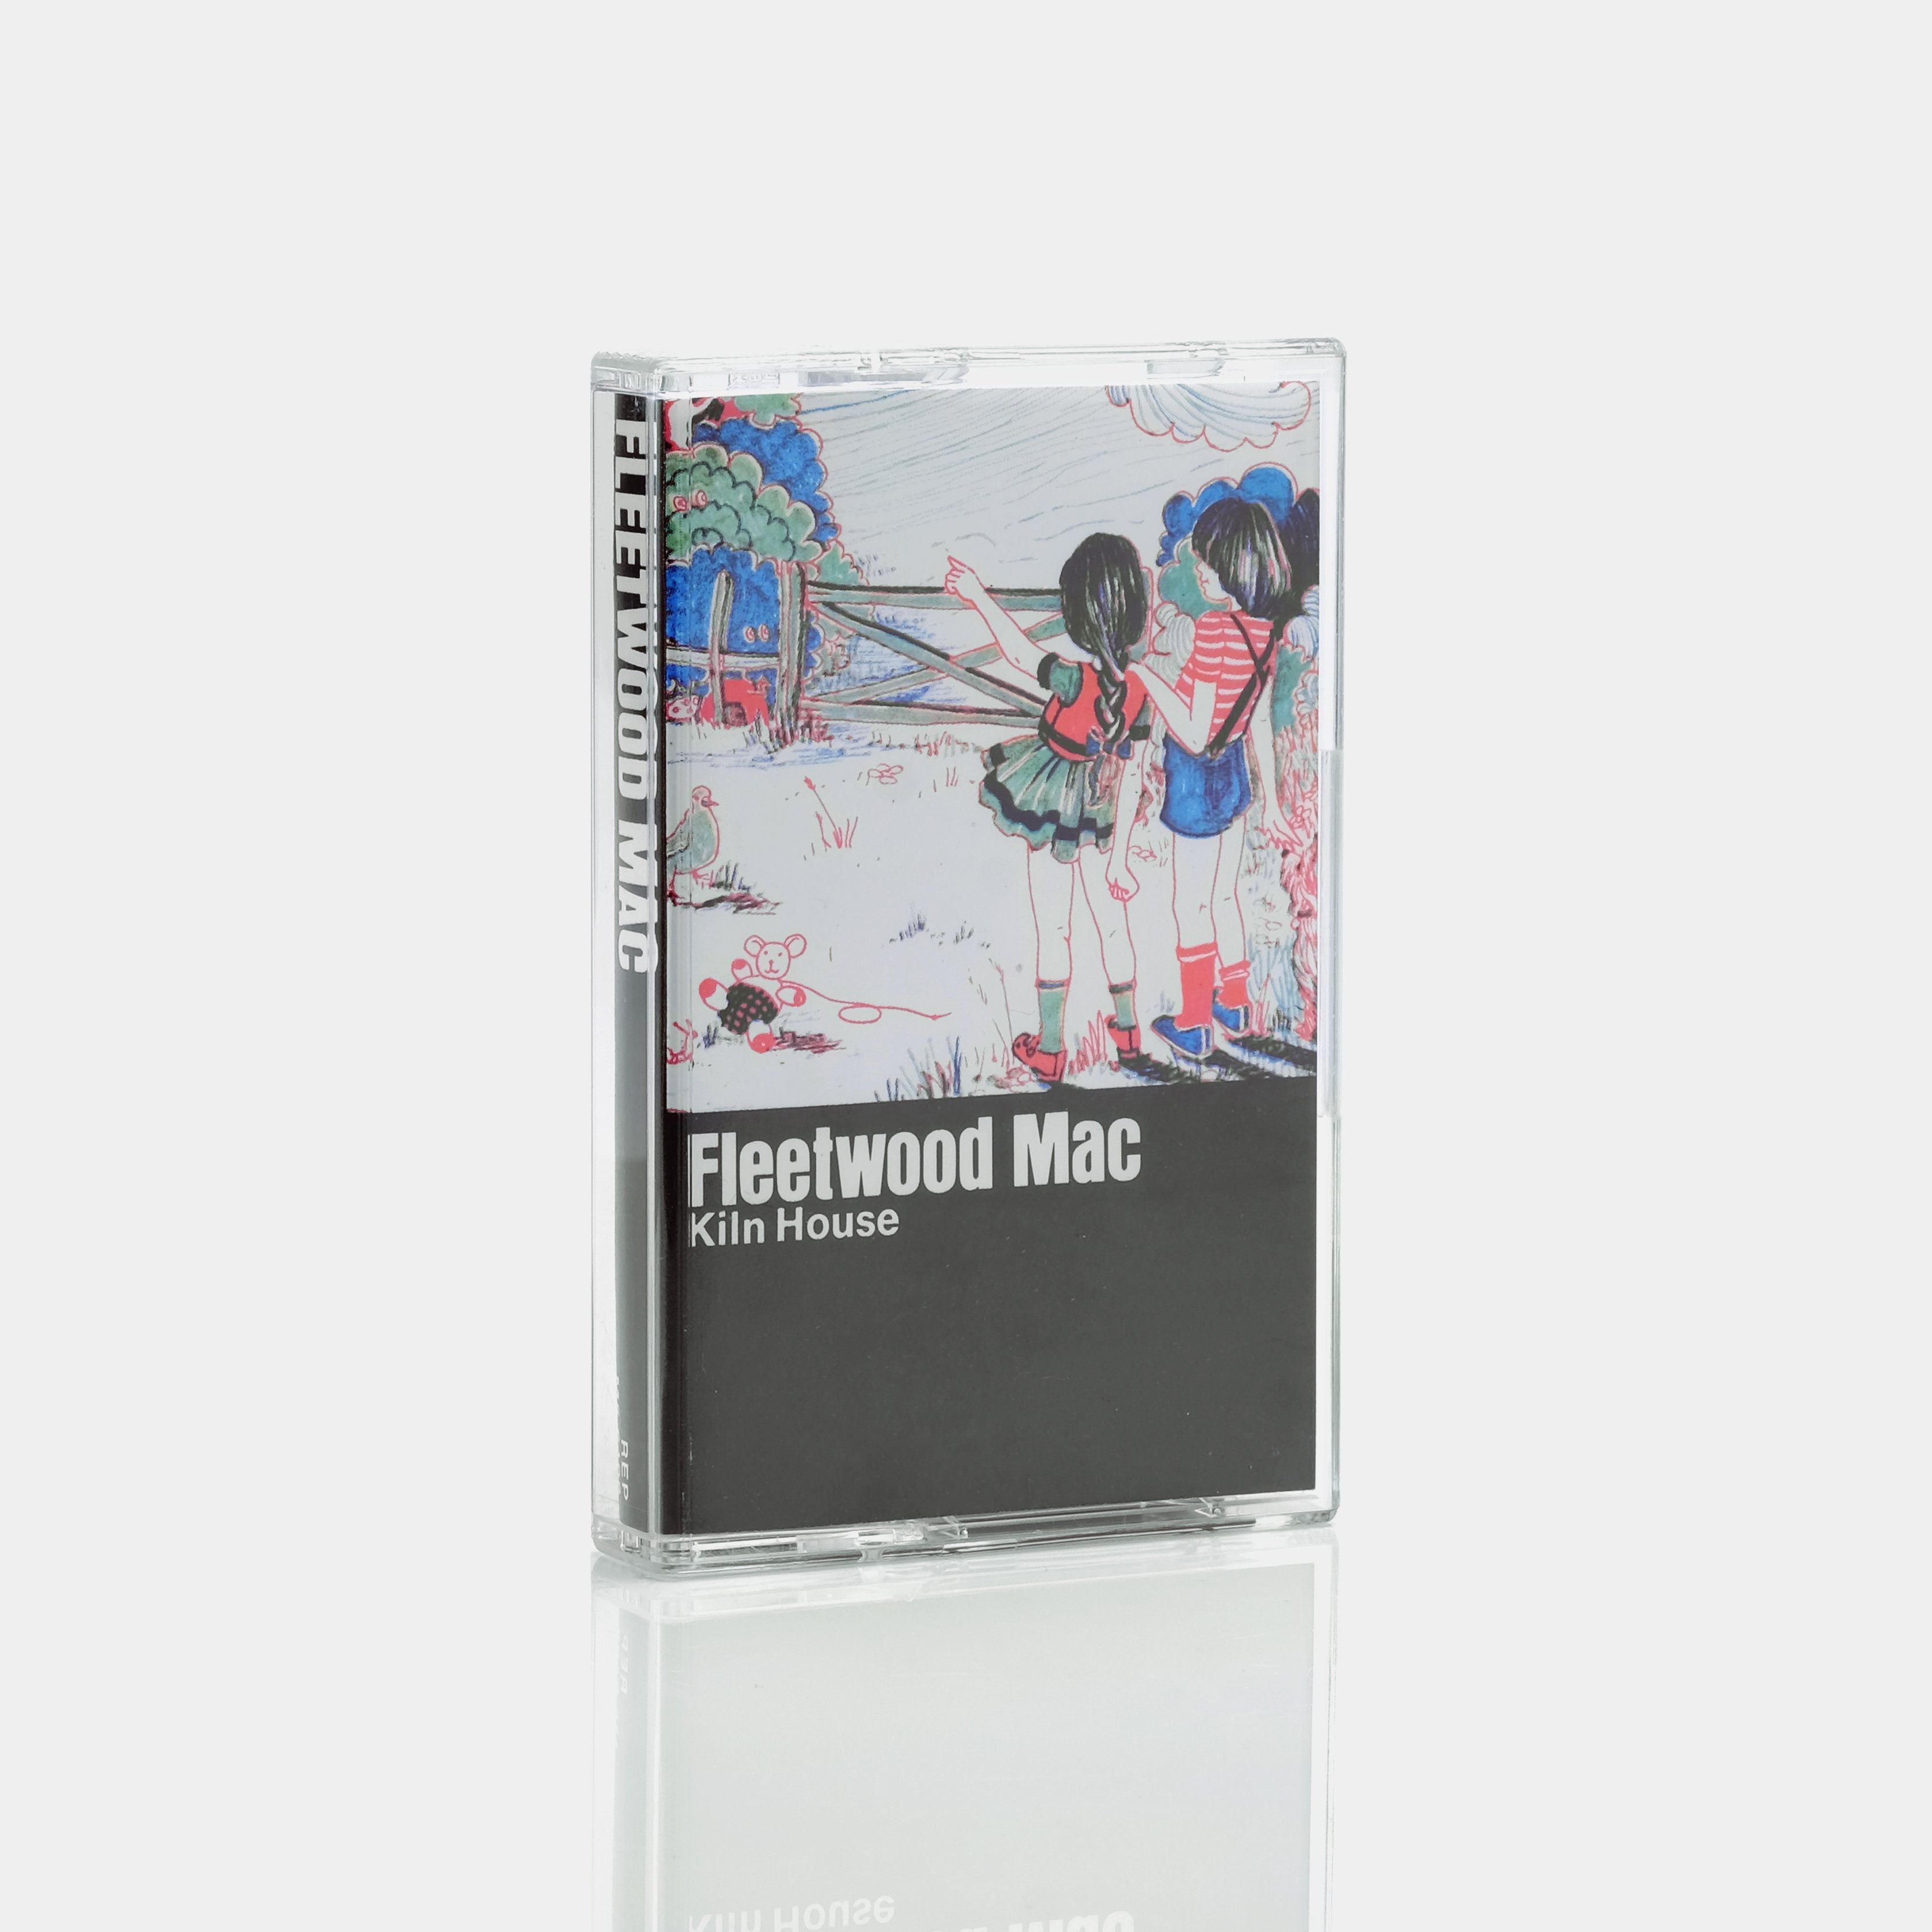 Fleetwood Mac - Kiln House Cassette Tape